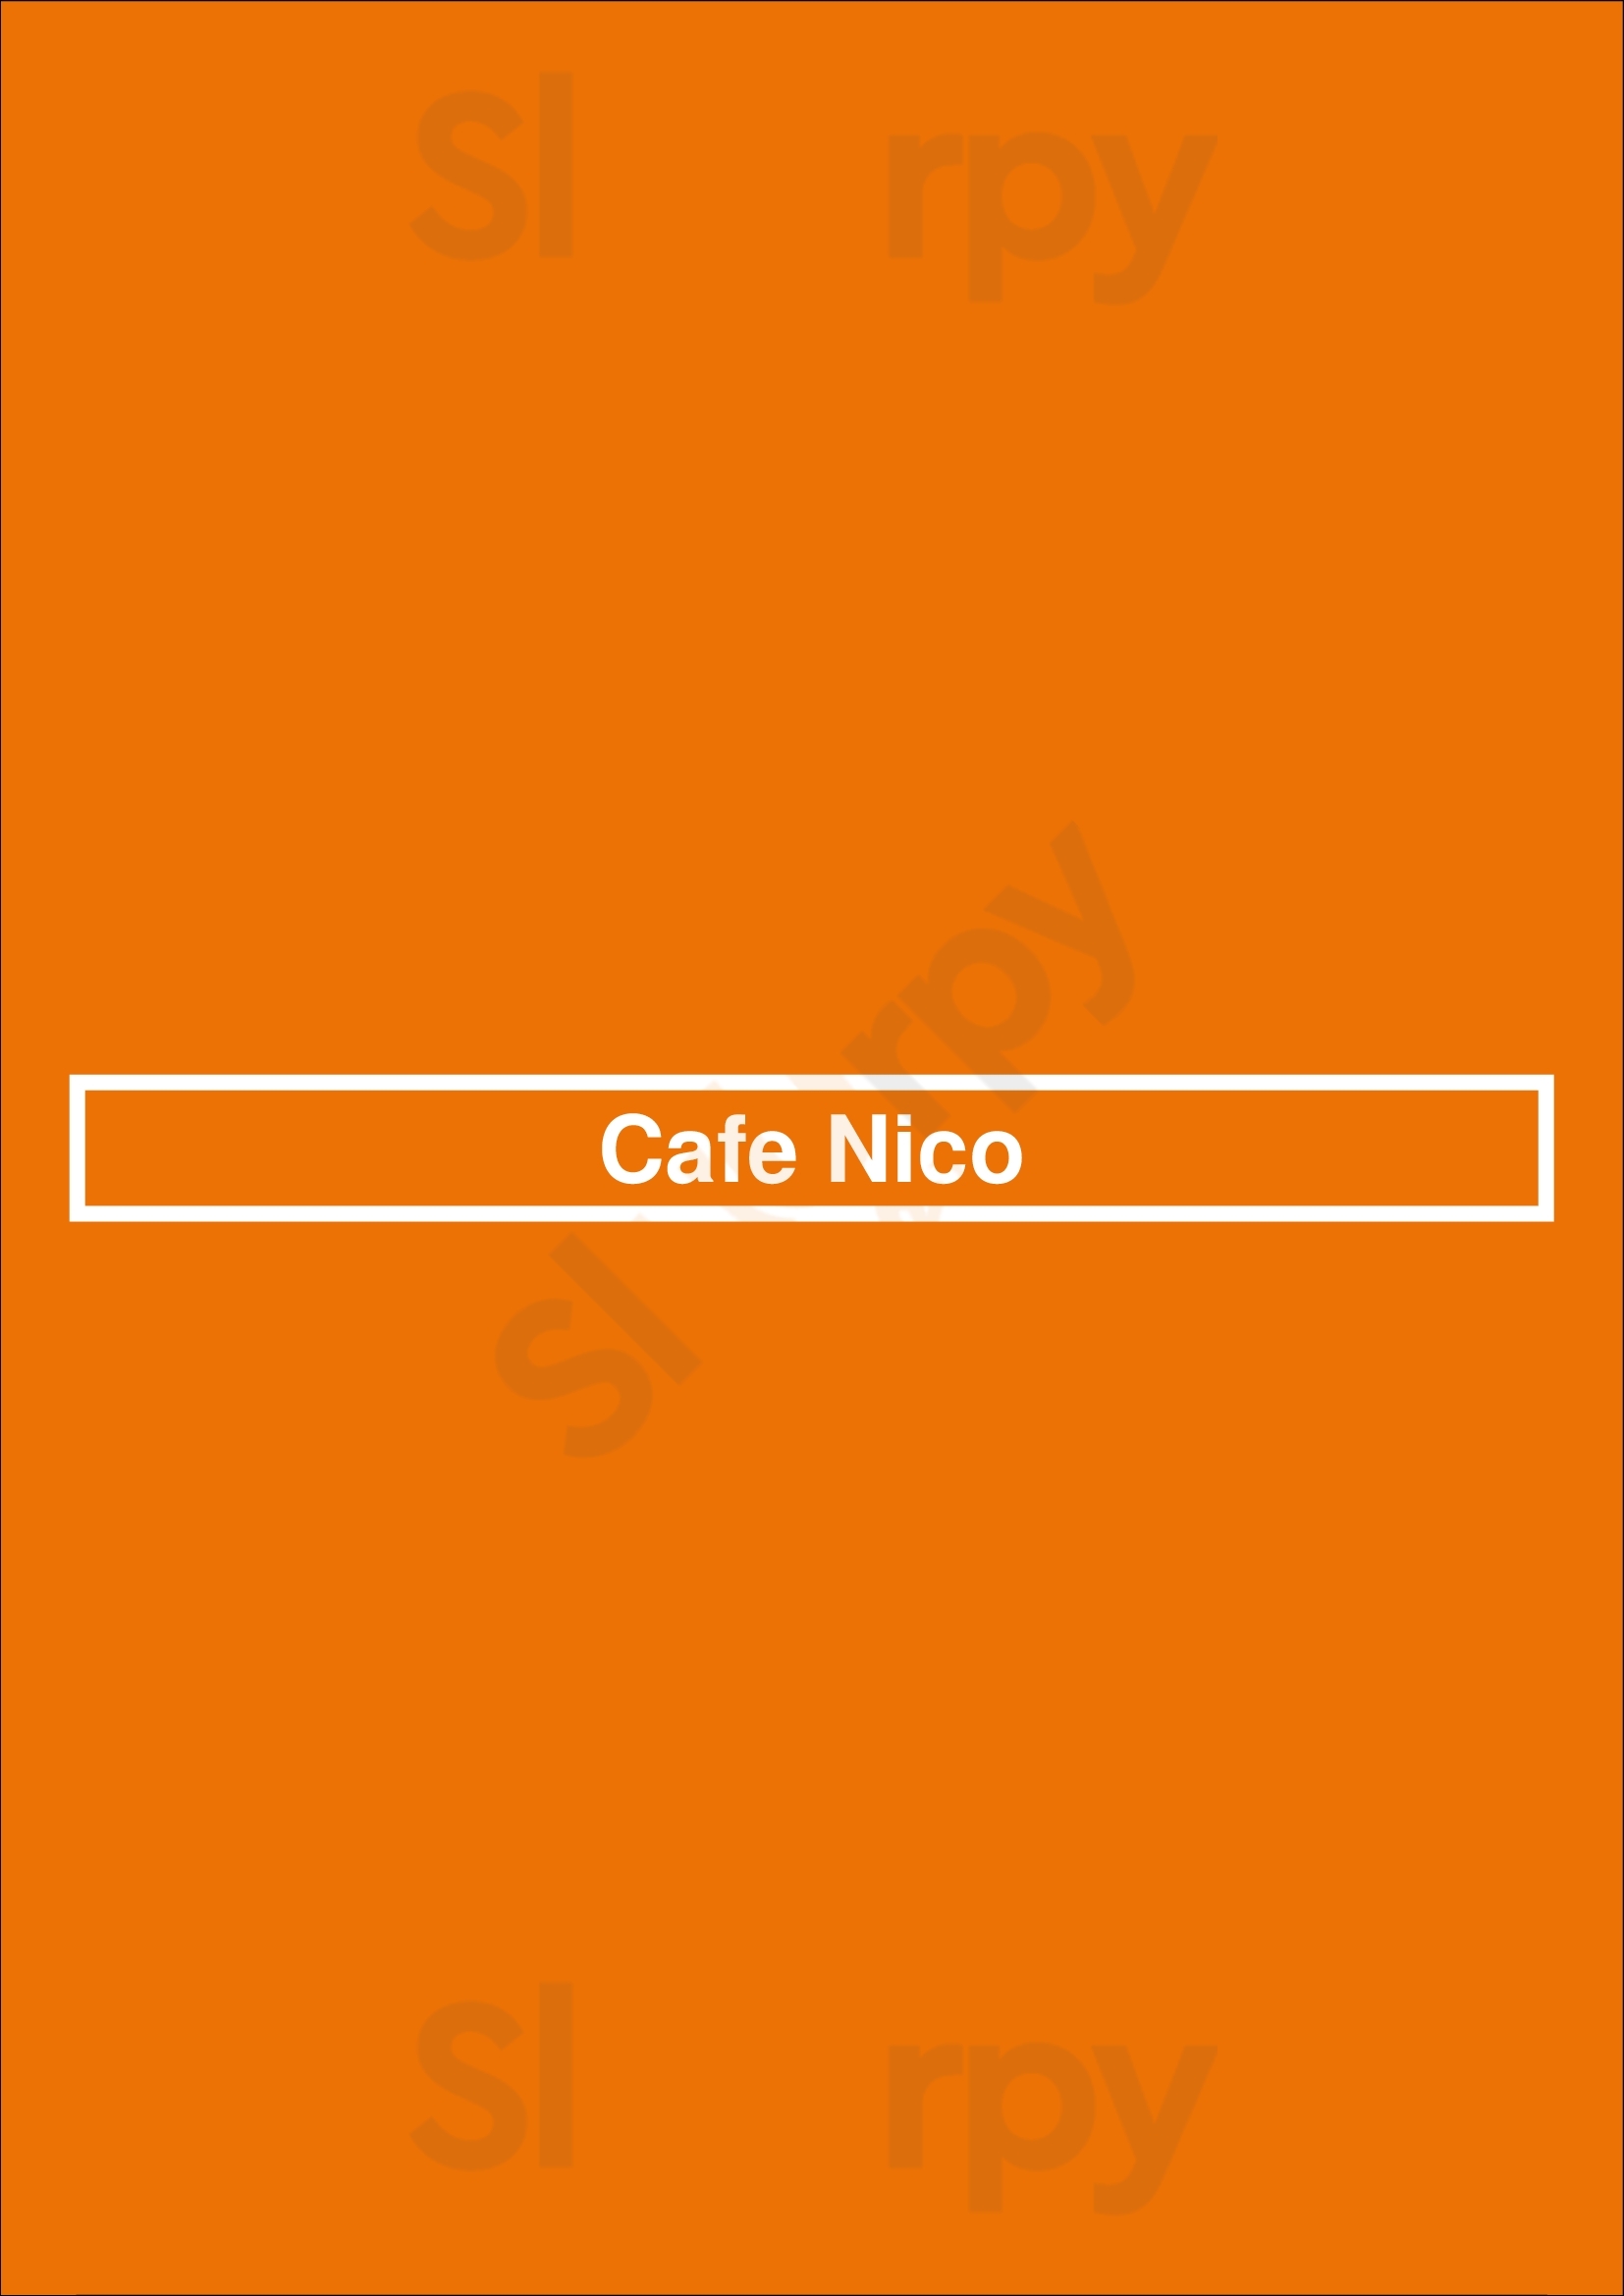 Cafe Nico Liverpool Menu - 1